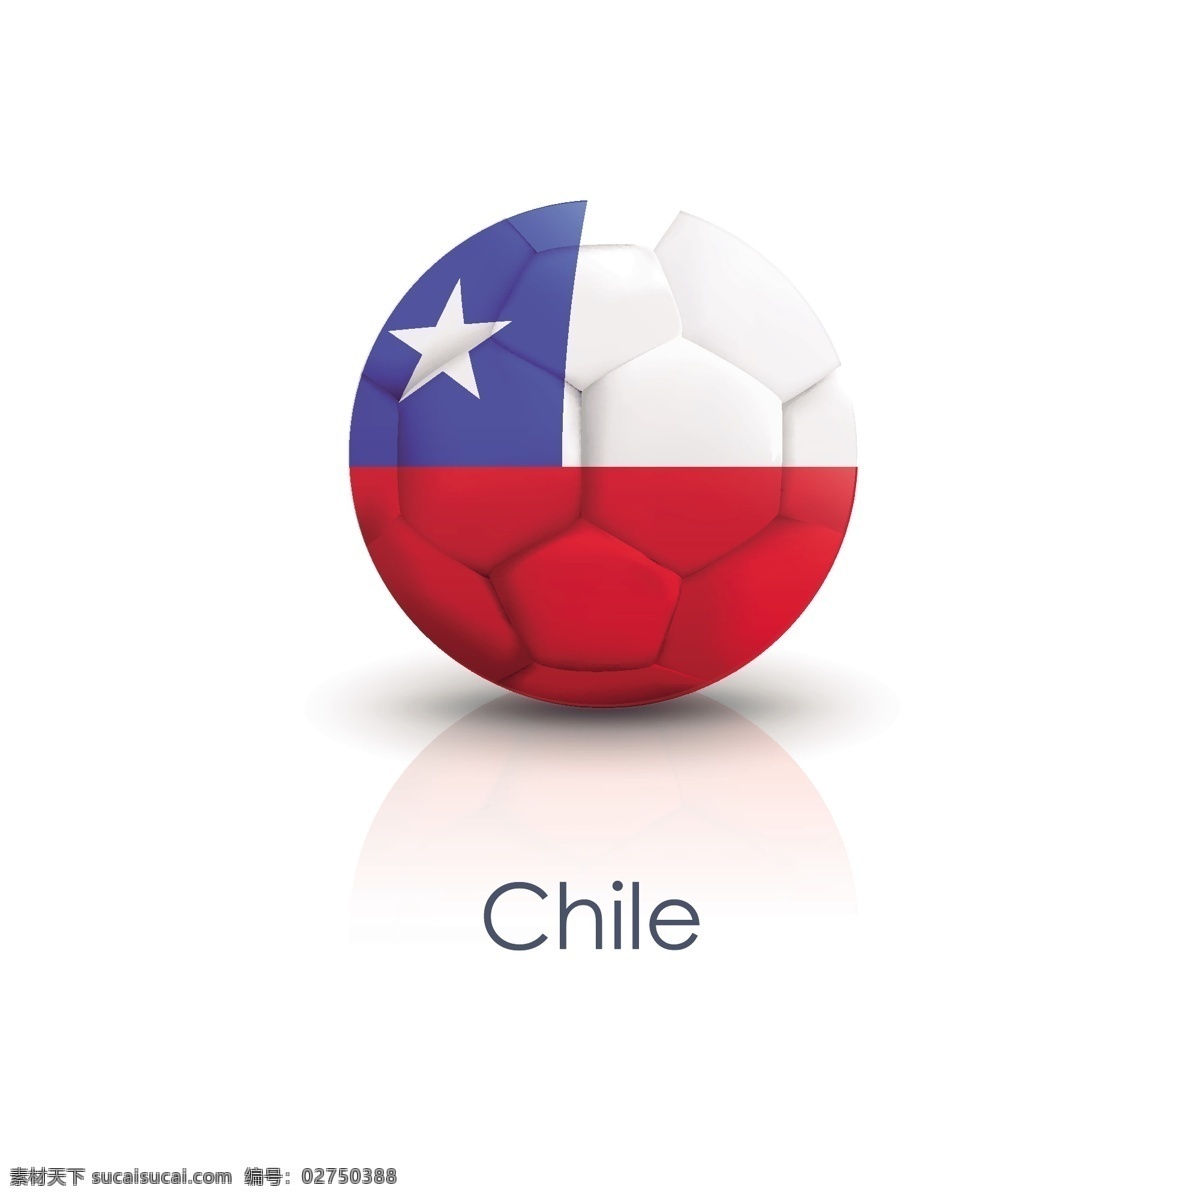 智利 国旗 足球 贴图 矢量 智利国旗 足球贴图 矢量素材 足球海报 校园足球 足球小报素材 足球运动员 足球海报素材 足球比赛海报 足球宣传海报 足球创意海报